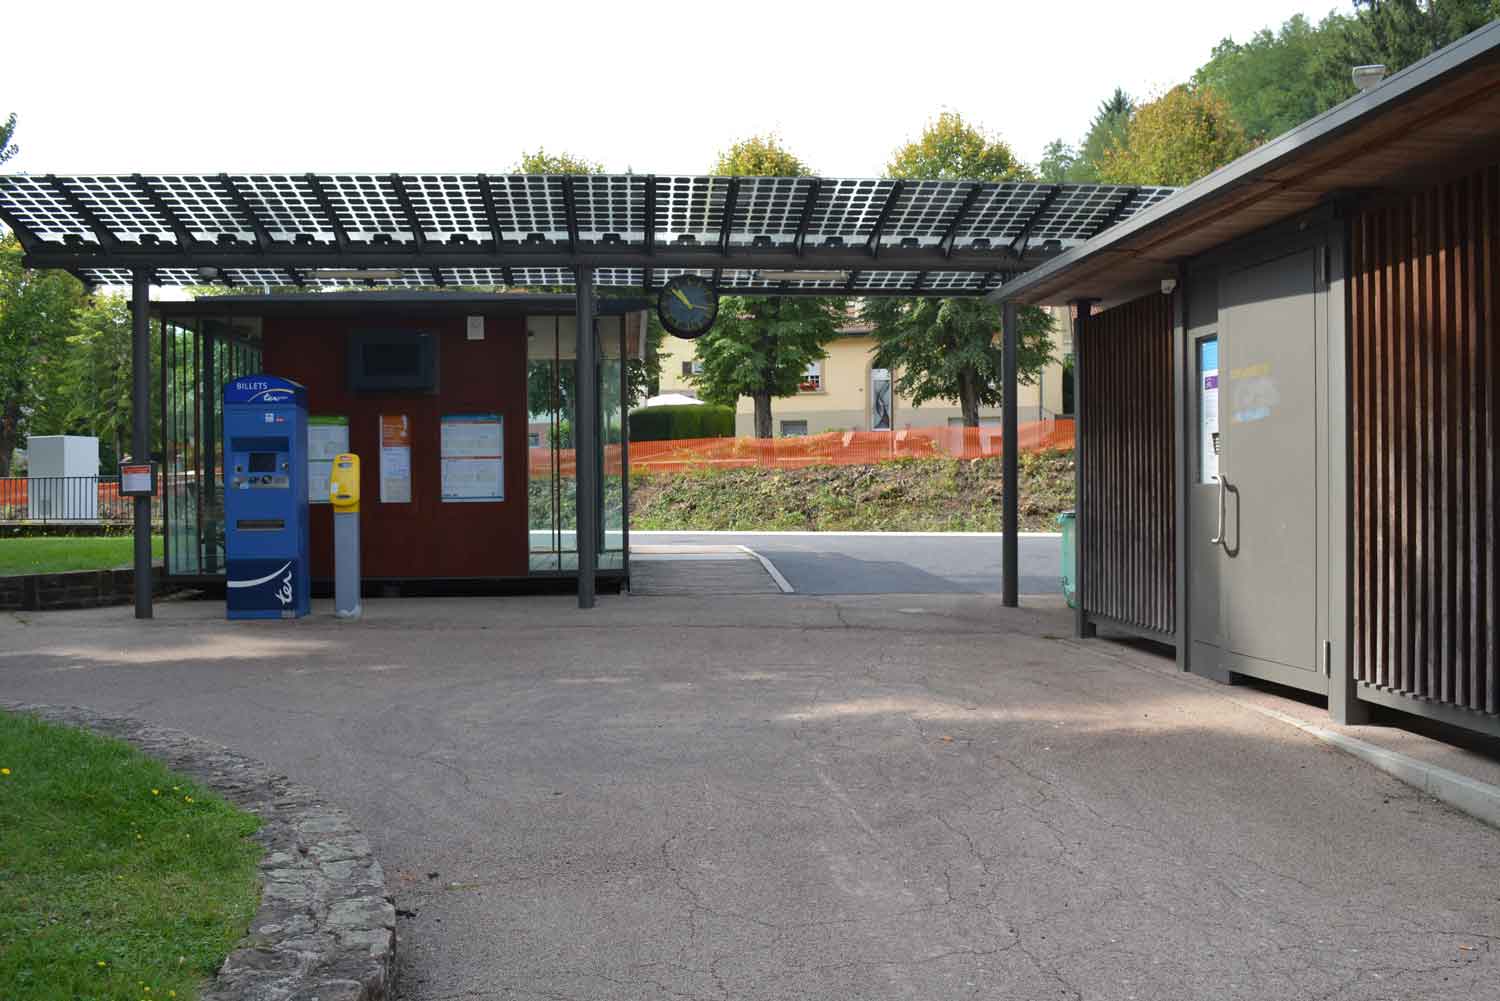 La gare de Niederbronn-les-Bains possède la première halte écodurable